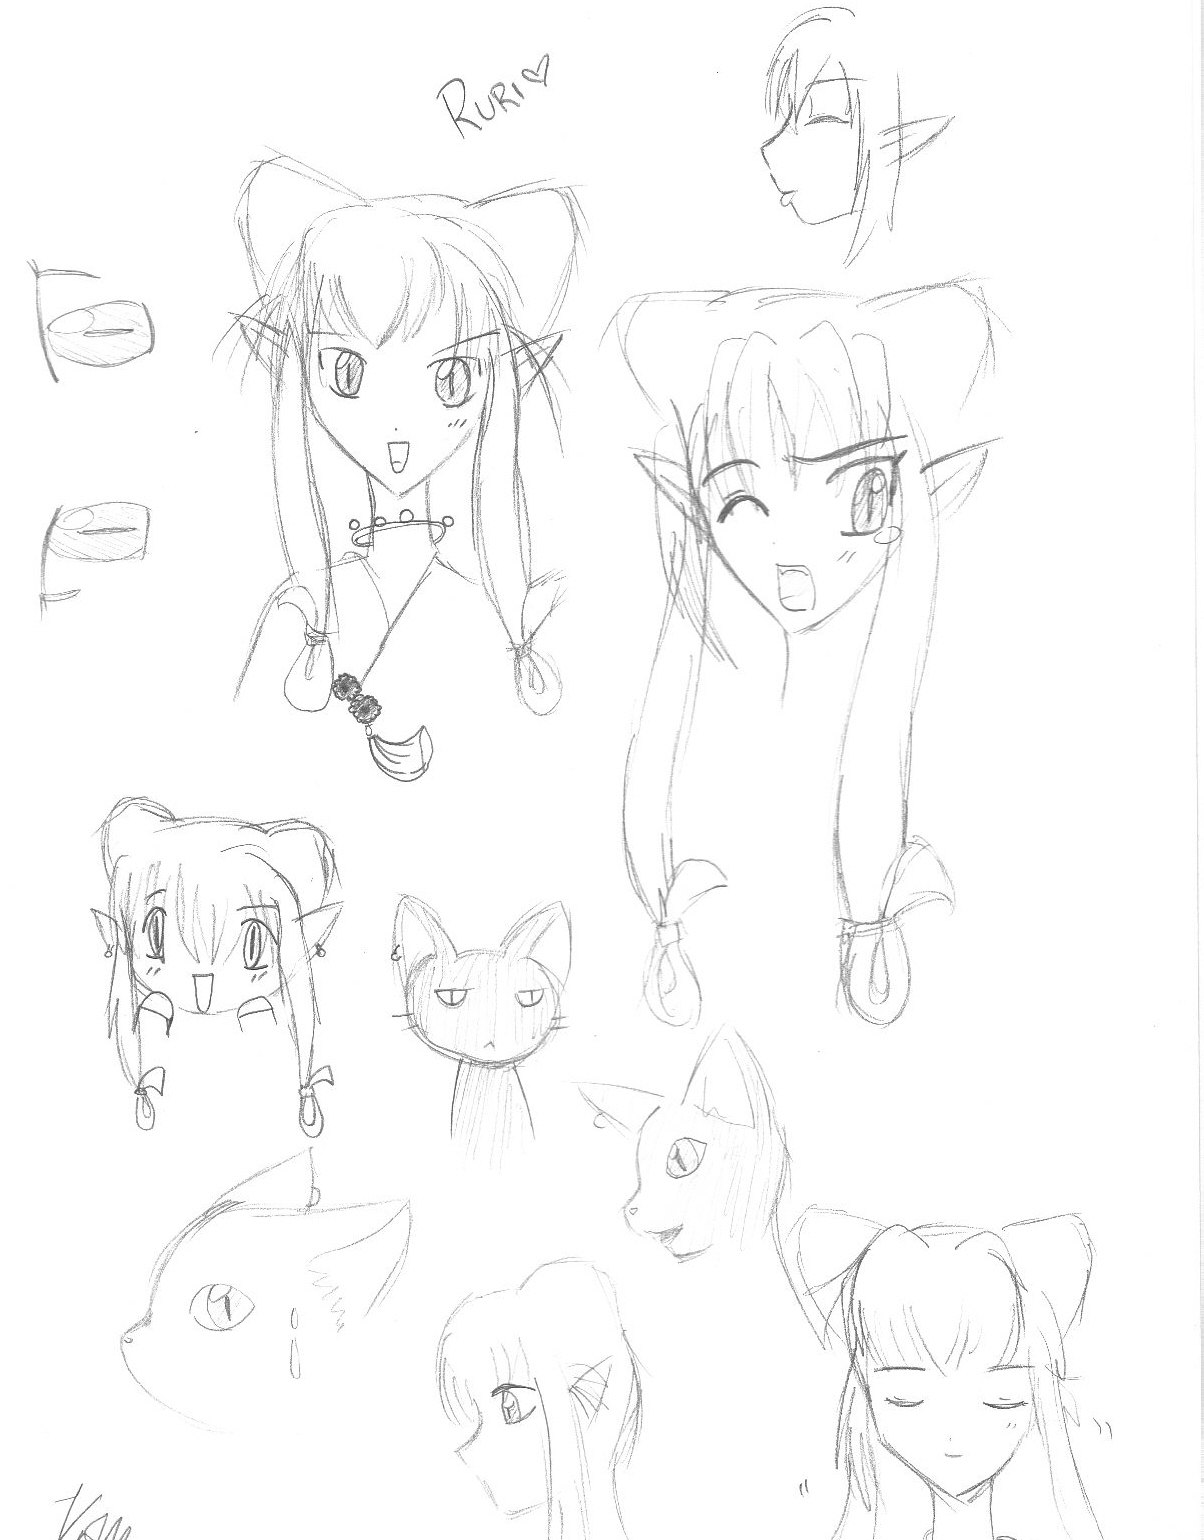 Ruri sketches by KaiHien